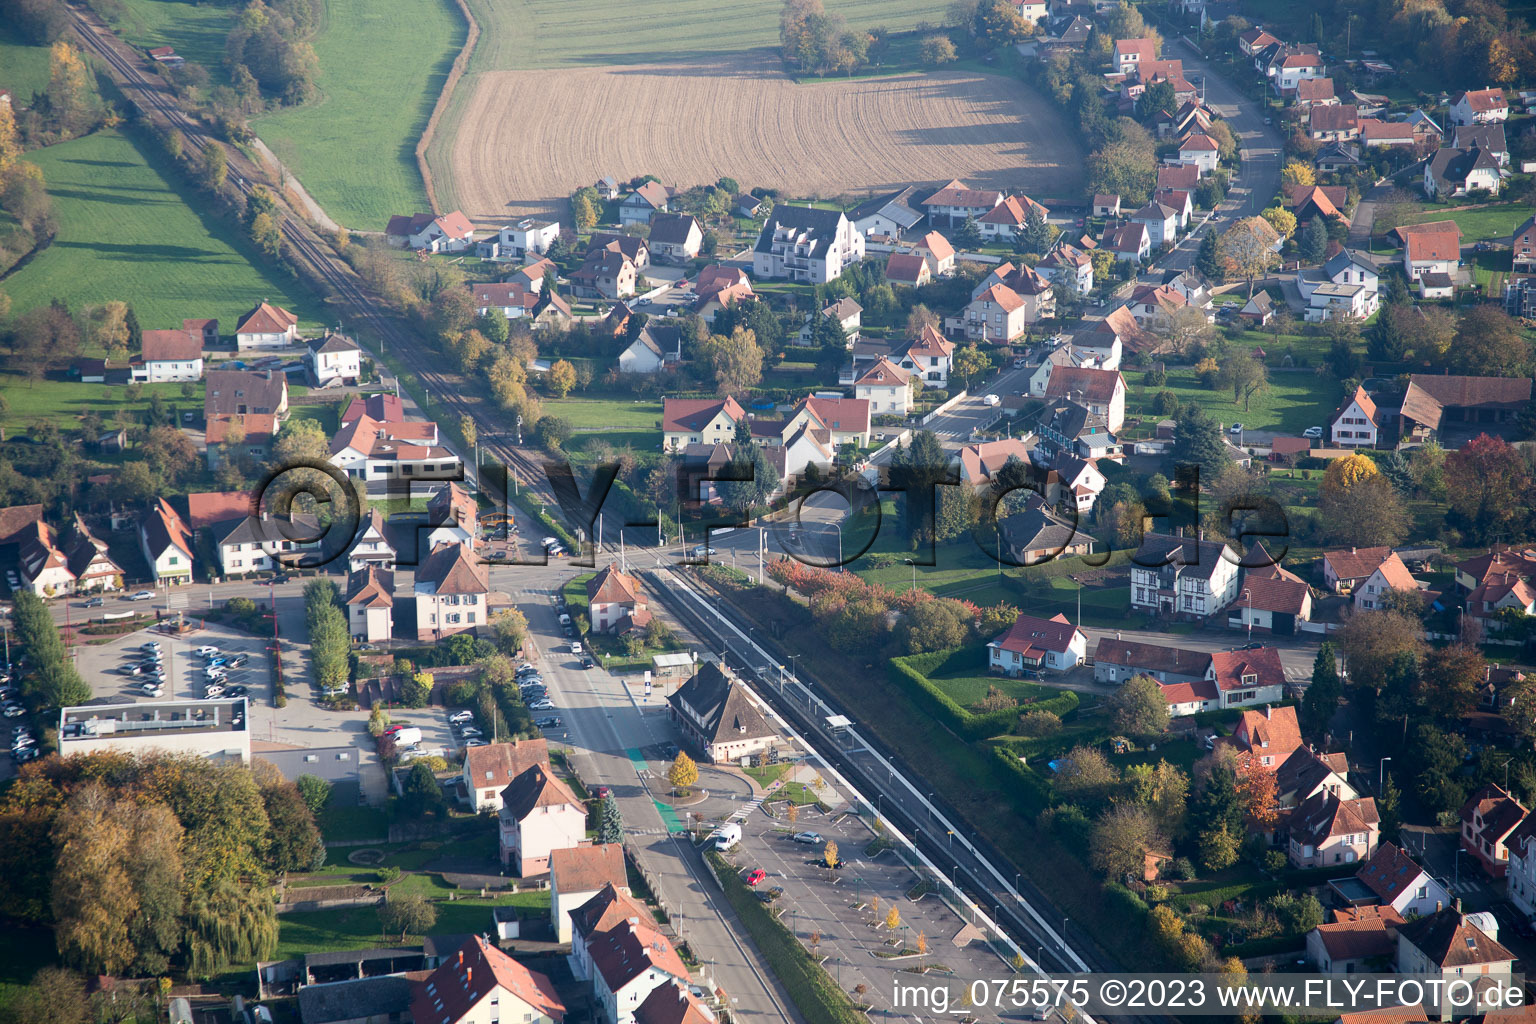 Soultz-sous-Forêts im Bundesland Bas-Rhin, Frankreich von der Drohne aus gesehen